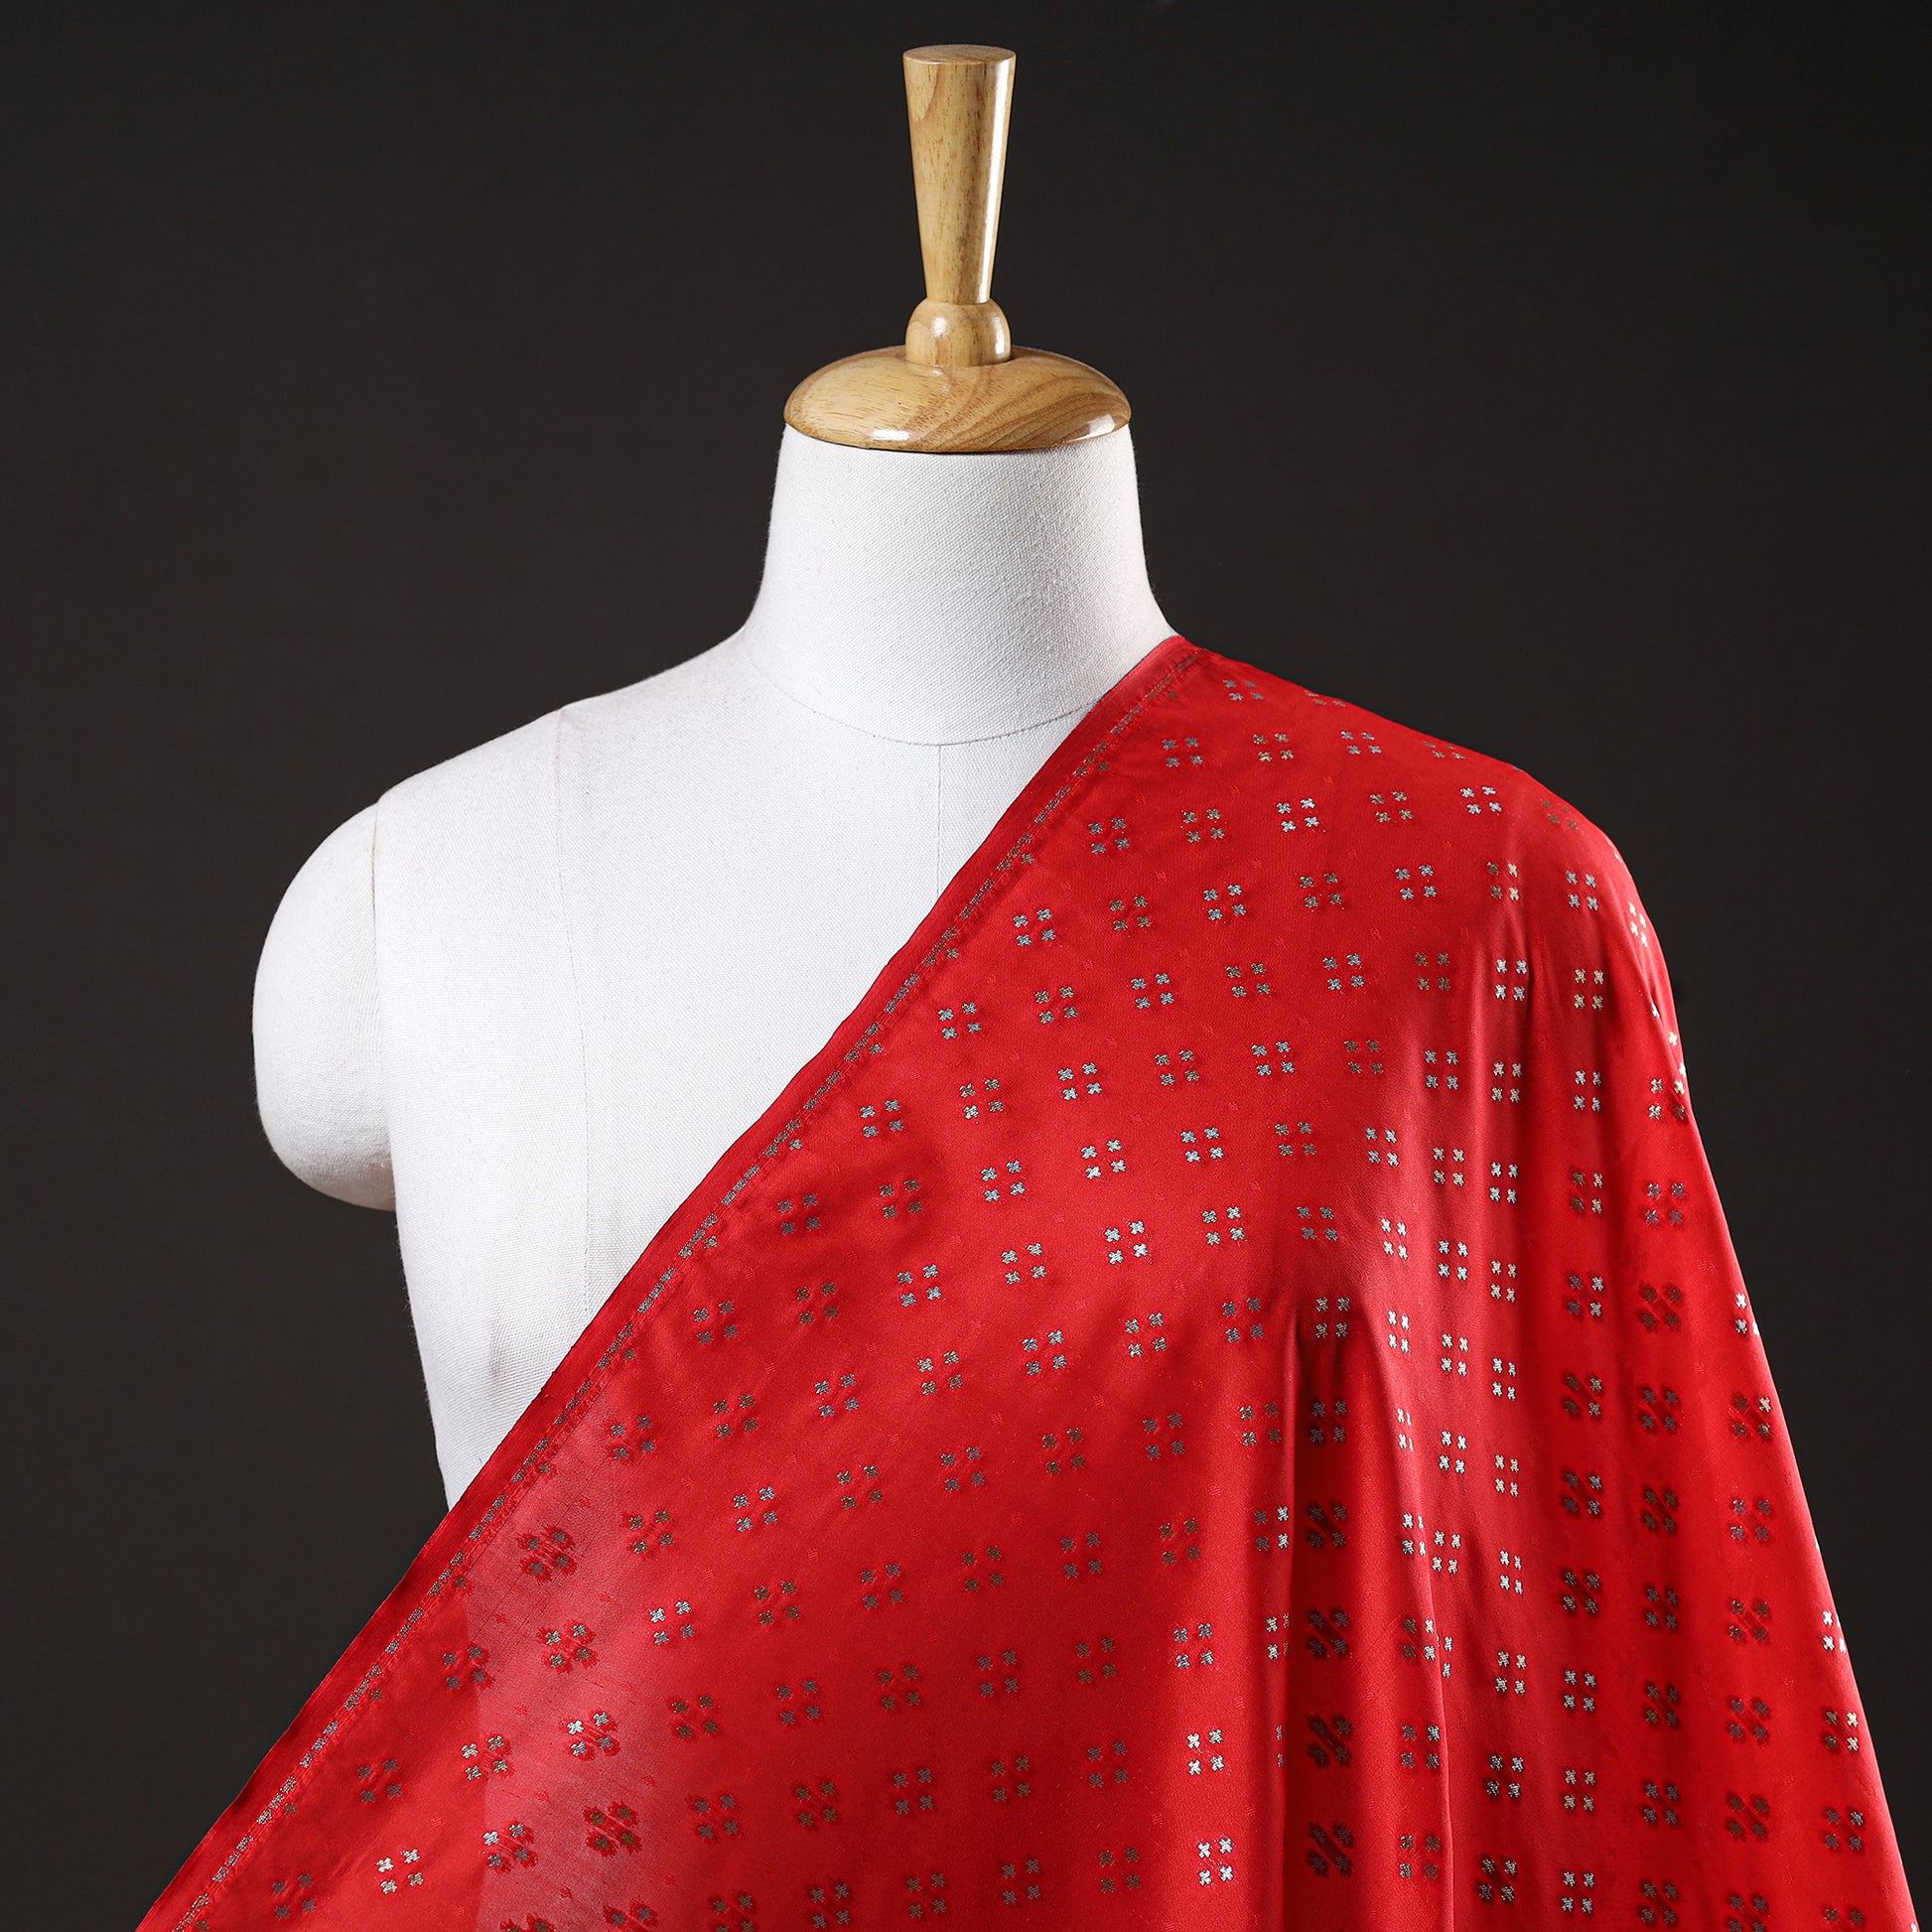 Banarasi Cutwork Zari Buti Silk Fabric